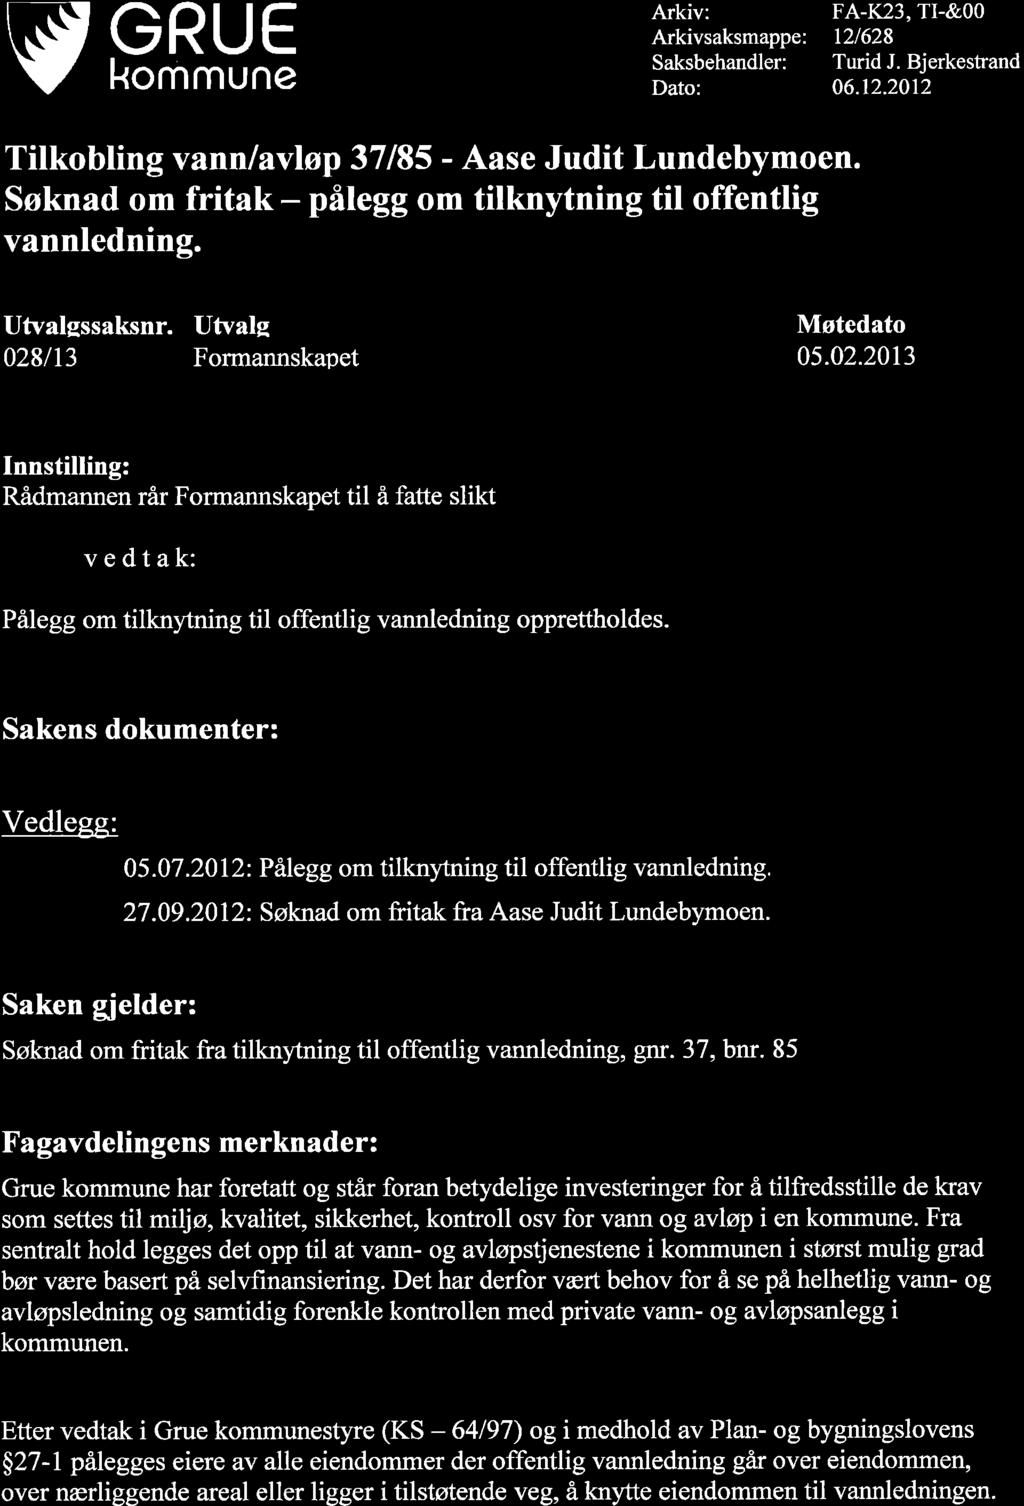 vsßhs Arkiv: Arkivsaksmappe: Saksbehandler: Dato: FA-K23, TI-&00 t2/628 Turid J. Bjerkestrand 06.12.2012 Tilkobling vann lavløp 37185 - Aase Judit Lundebymoen.